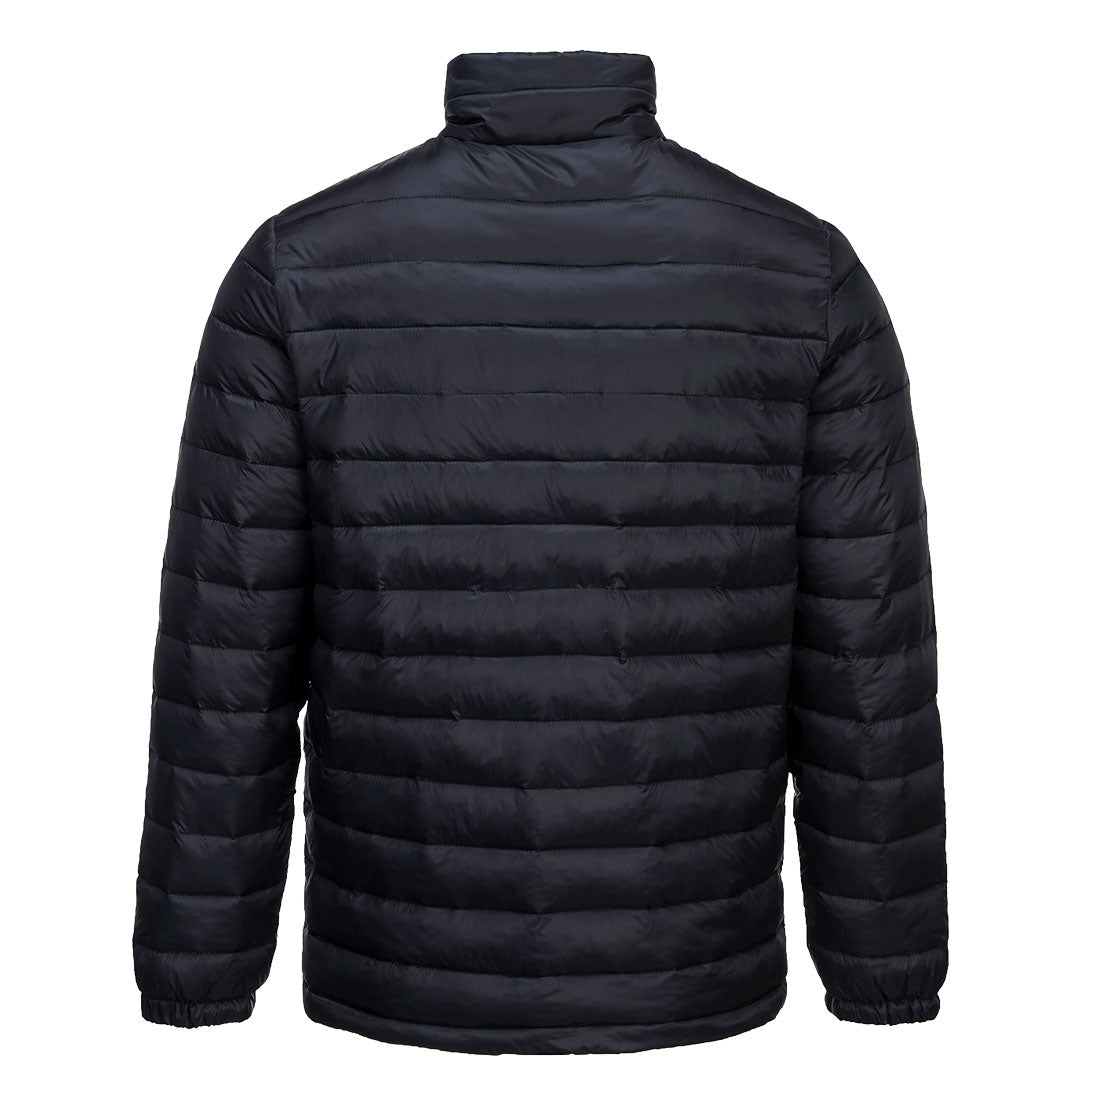 Baffle Jacket Black Aspen 543 - Adult